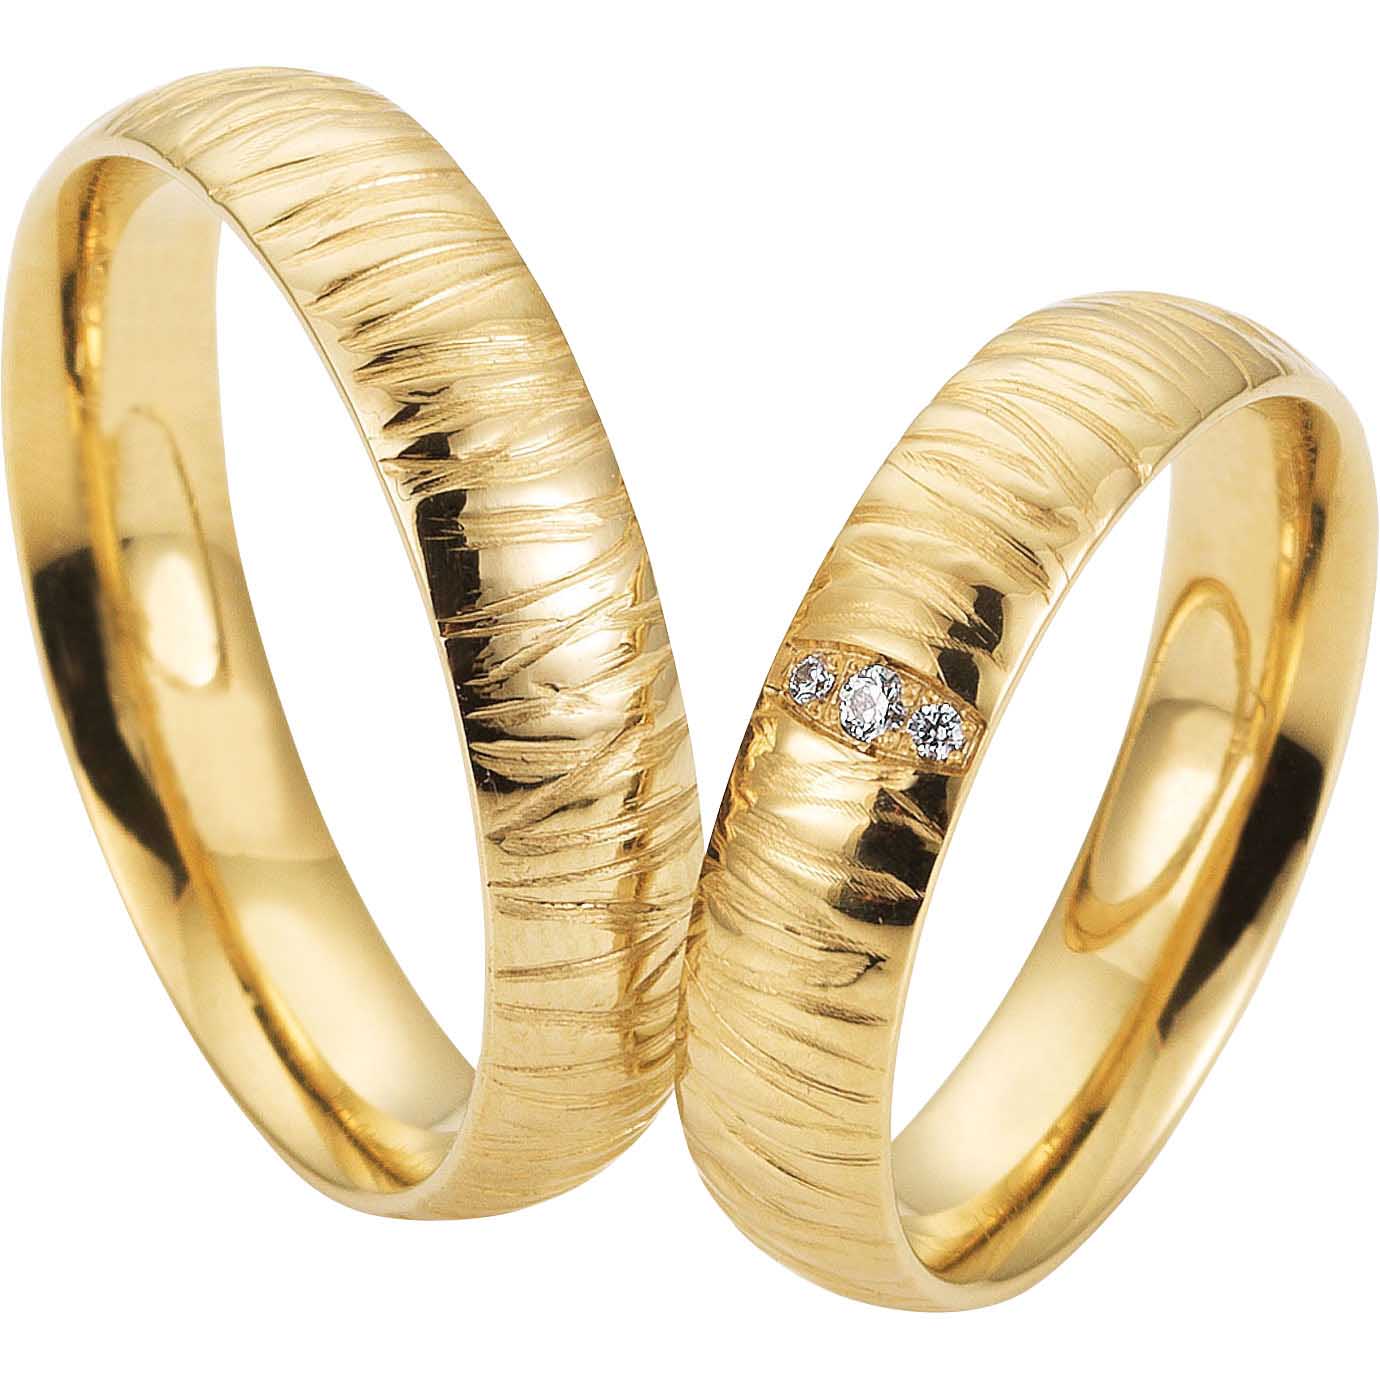 Benutzerdefinierte personalisierte 18K vergoldete Ringe China 925 Silberschmuck Lieferant